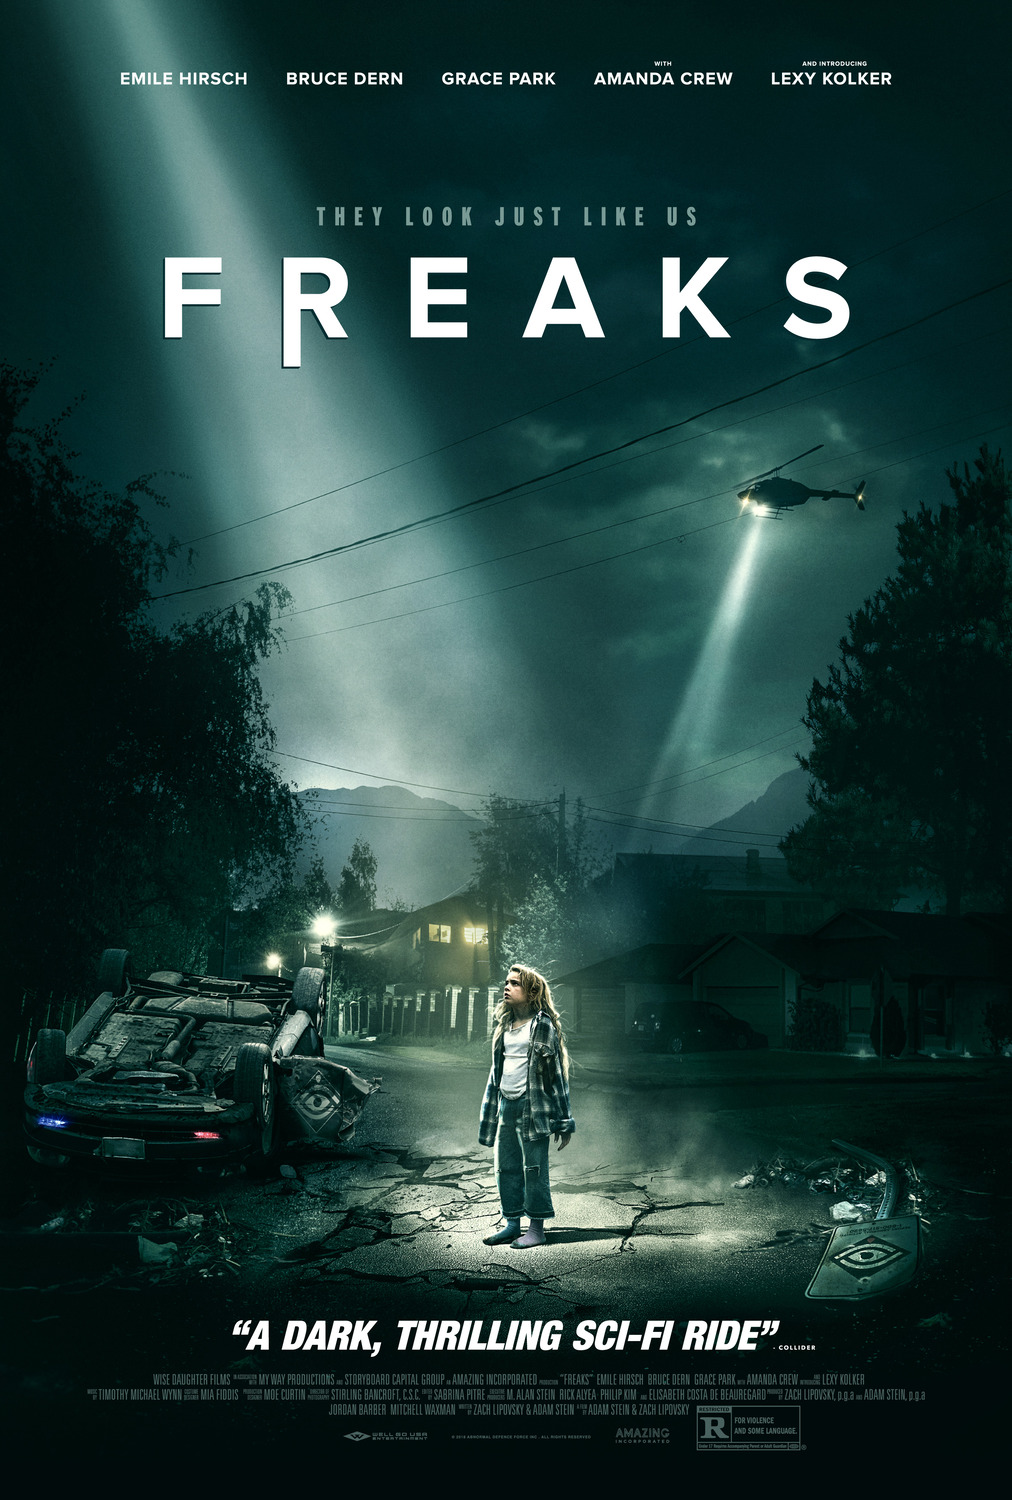 Freaks (2018) ฟรีคส์ คนกลายพันธุ์